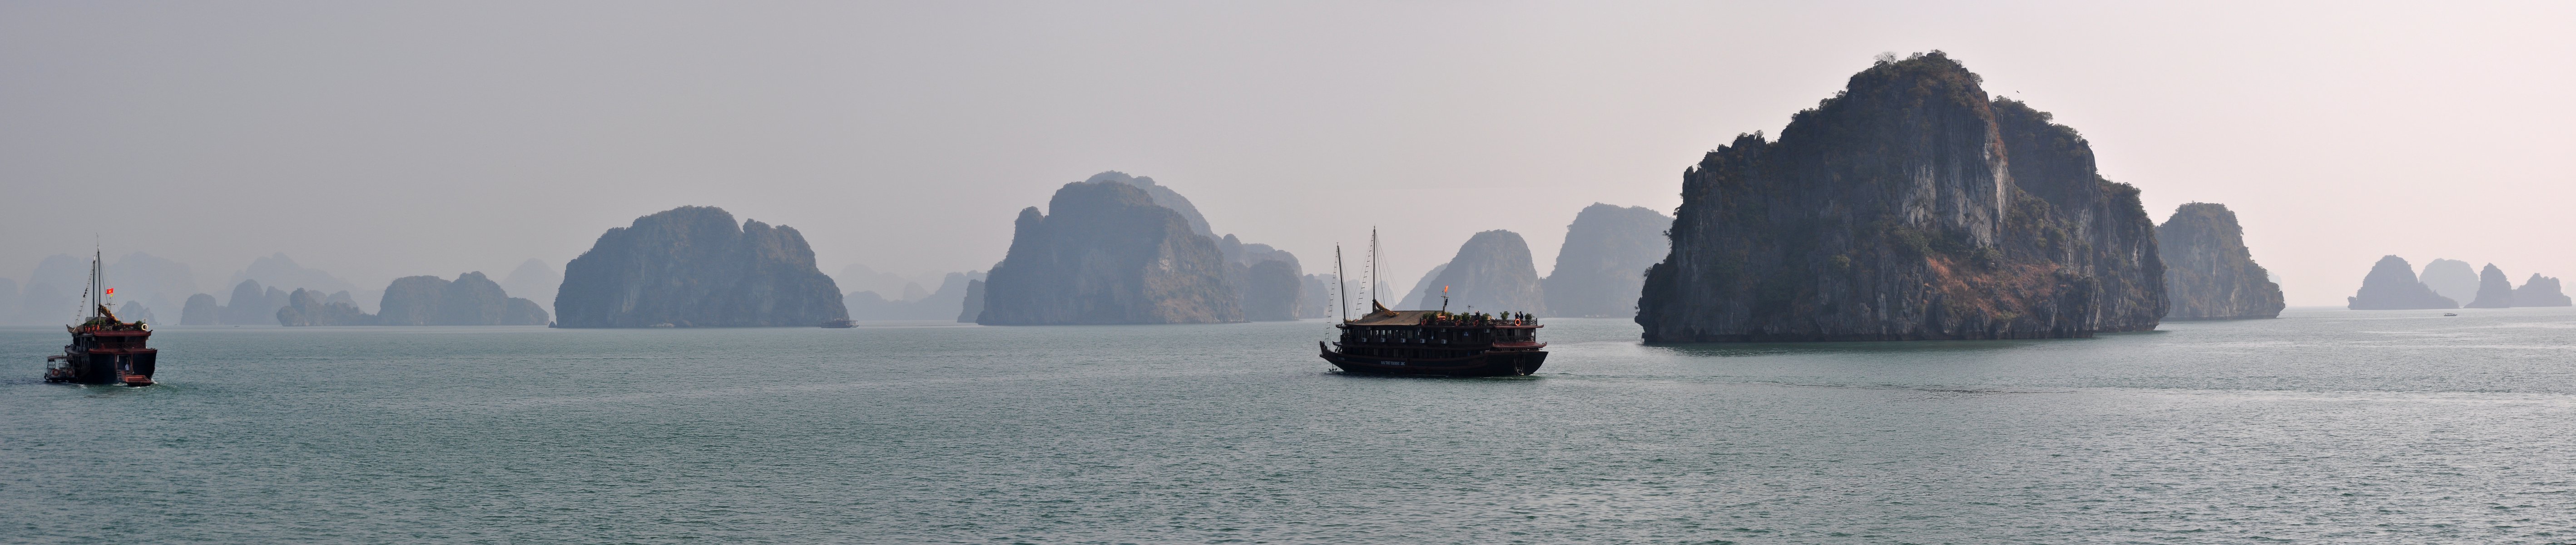 Ha Long Bay - Vietnam 11.jpg